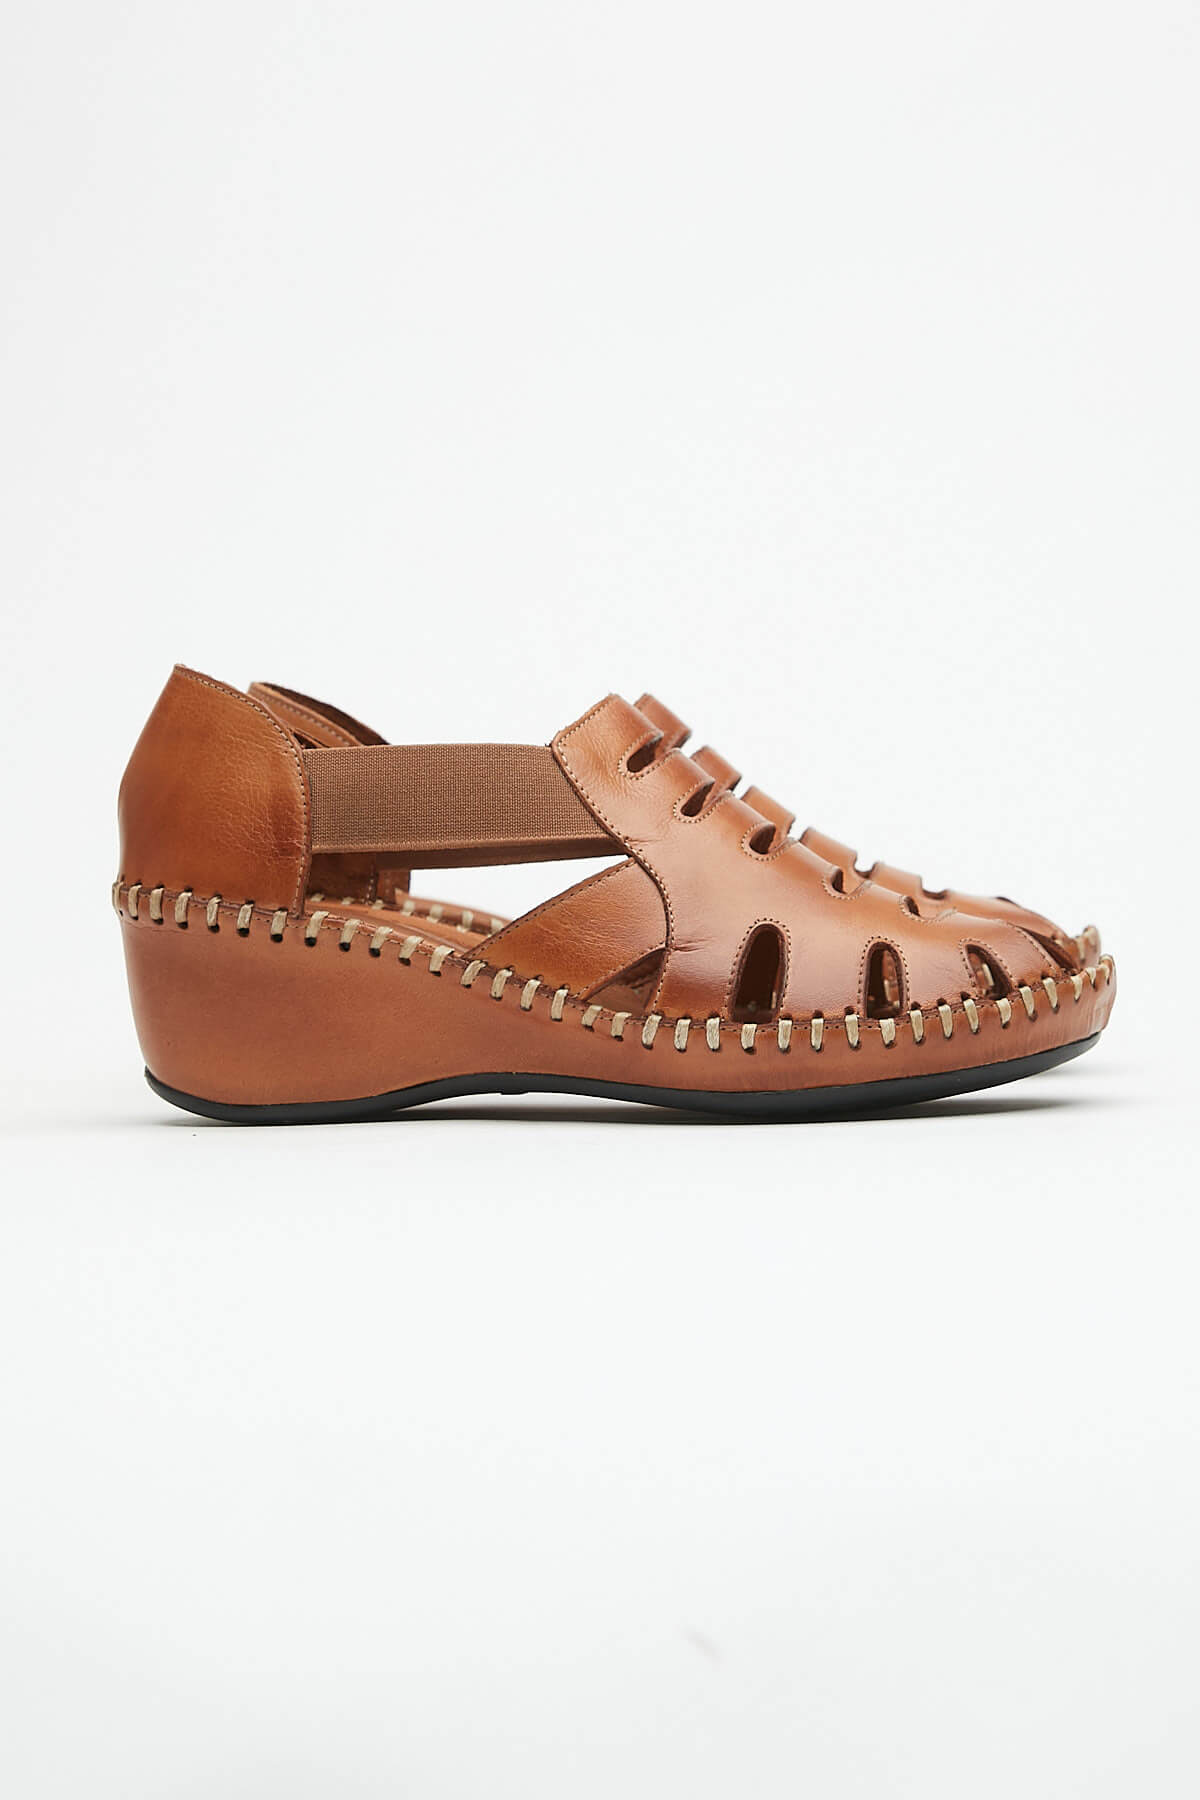 Kadın Comfort Deri Sandalet Taba 21793070 - Thumbnail